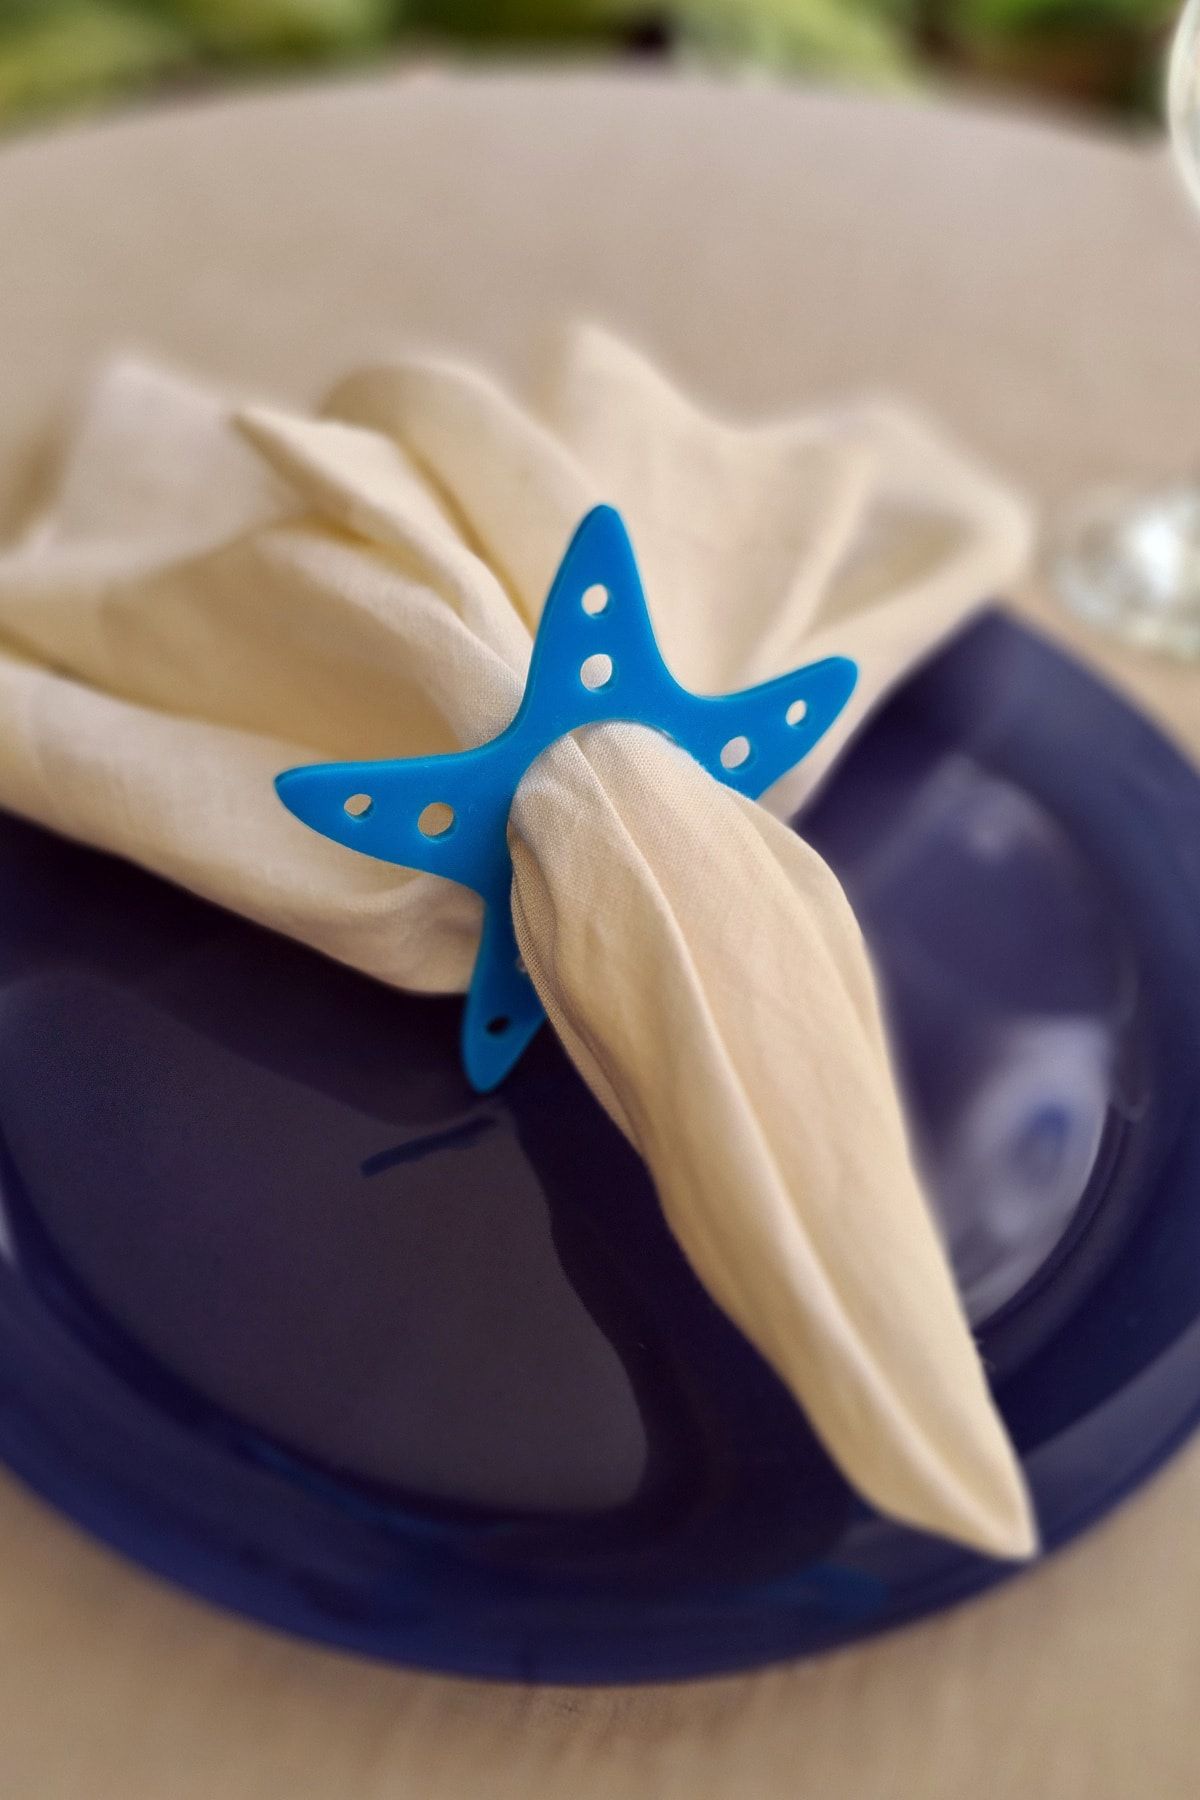 Story Deniz Yıldızı Marin Desen 6’lı Mavi Renk Akrilik Peçete Halkası Peçete Yüzüğü